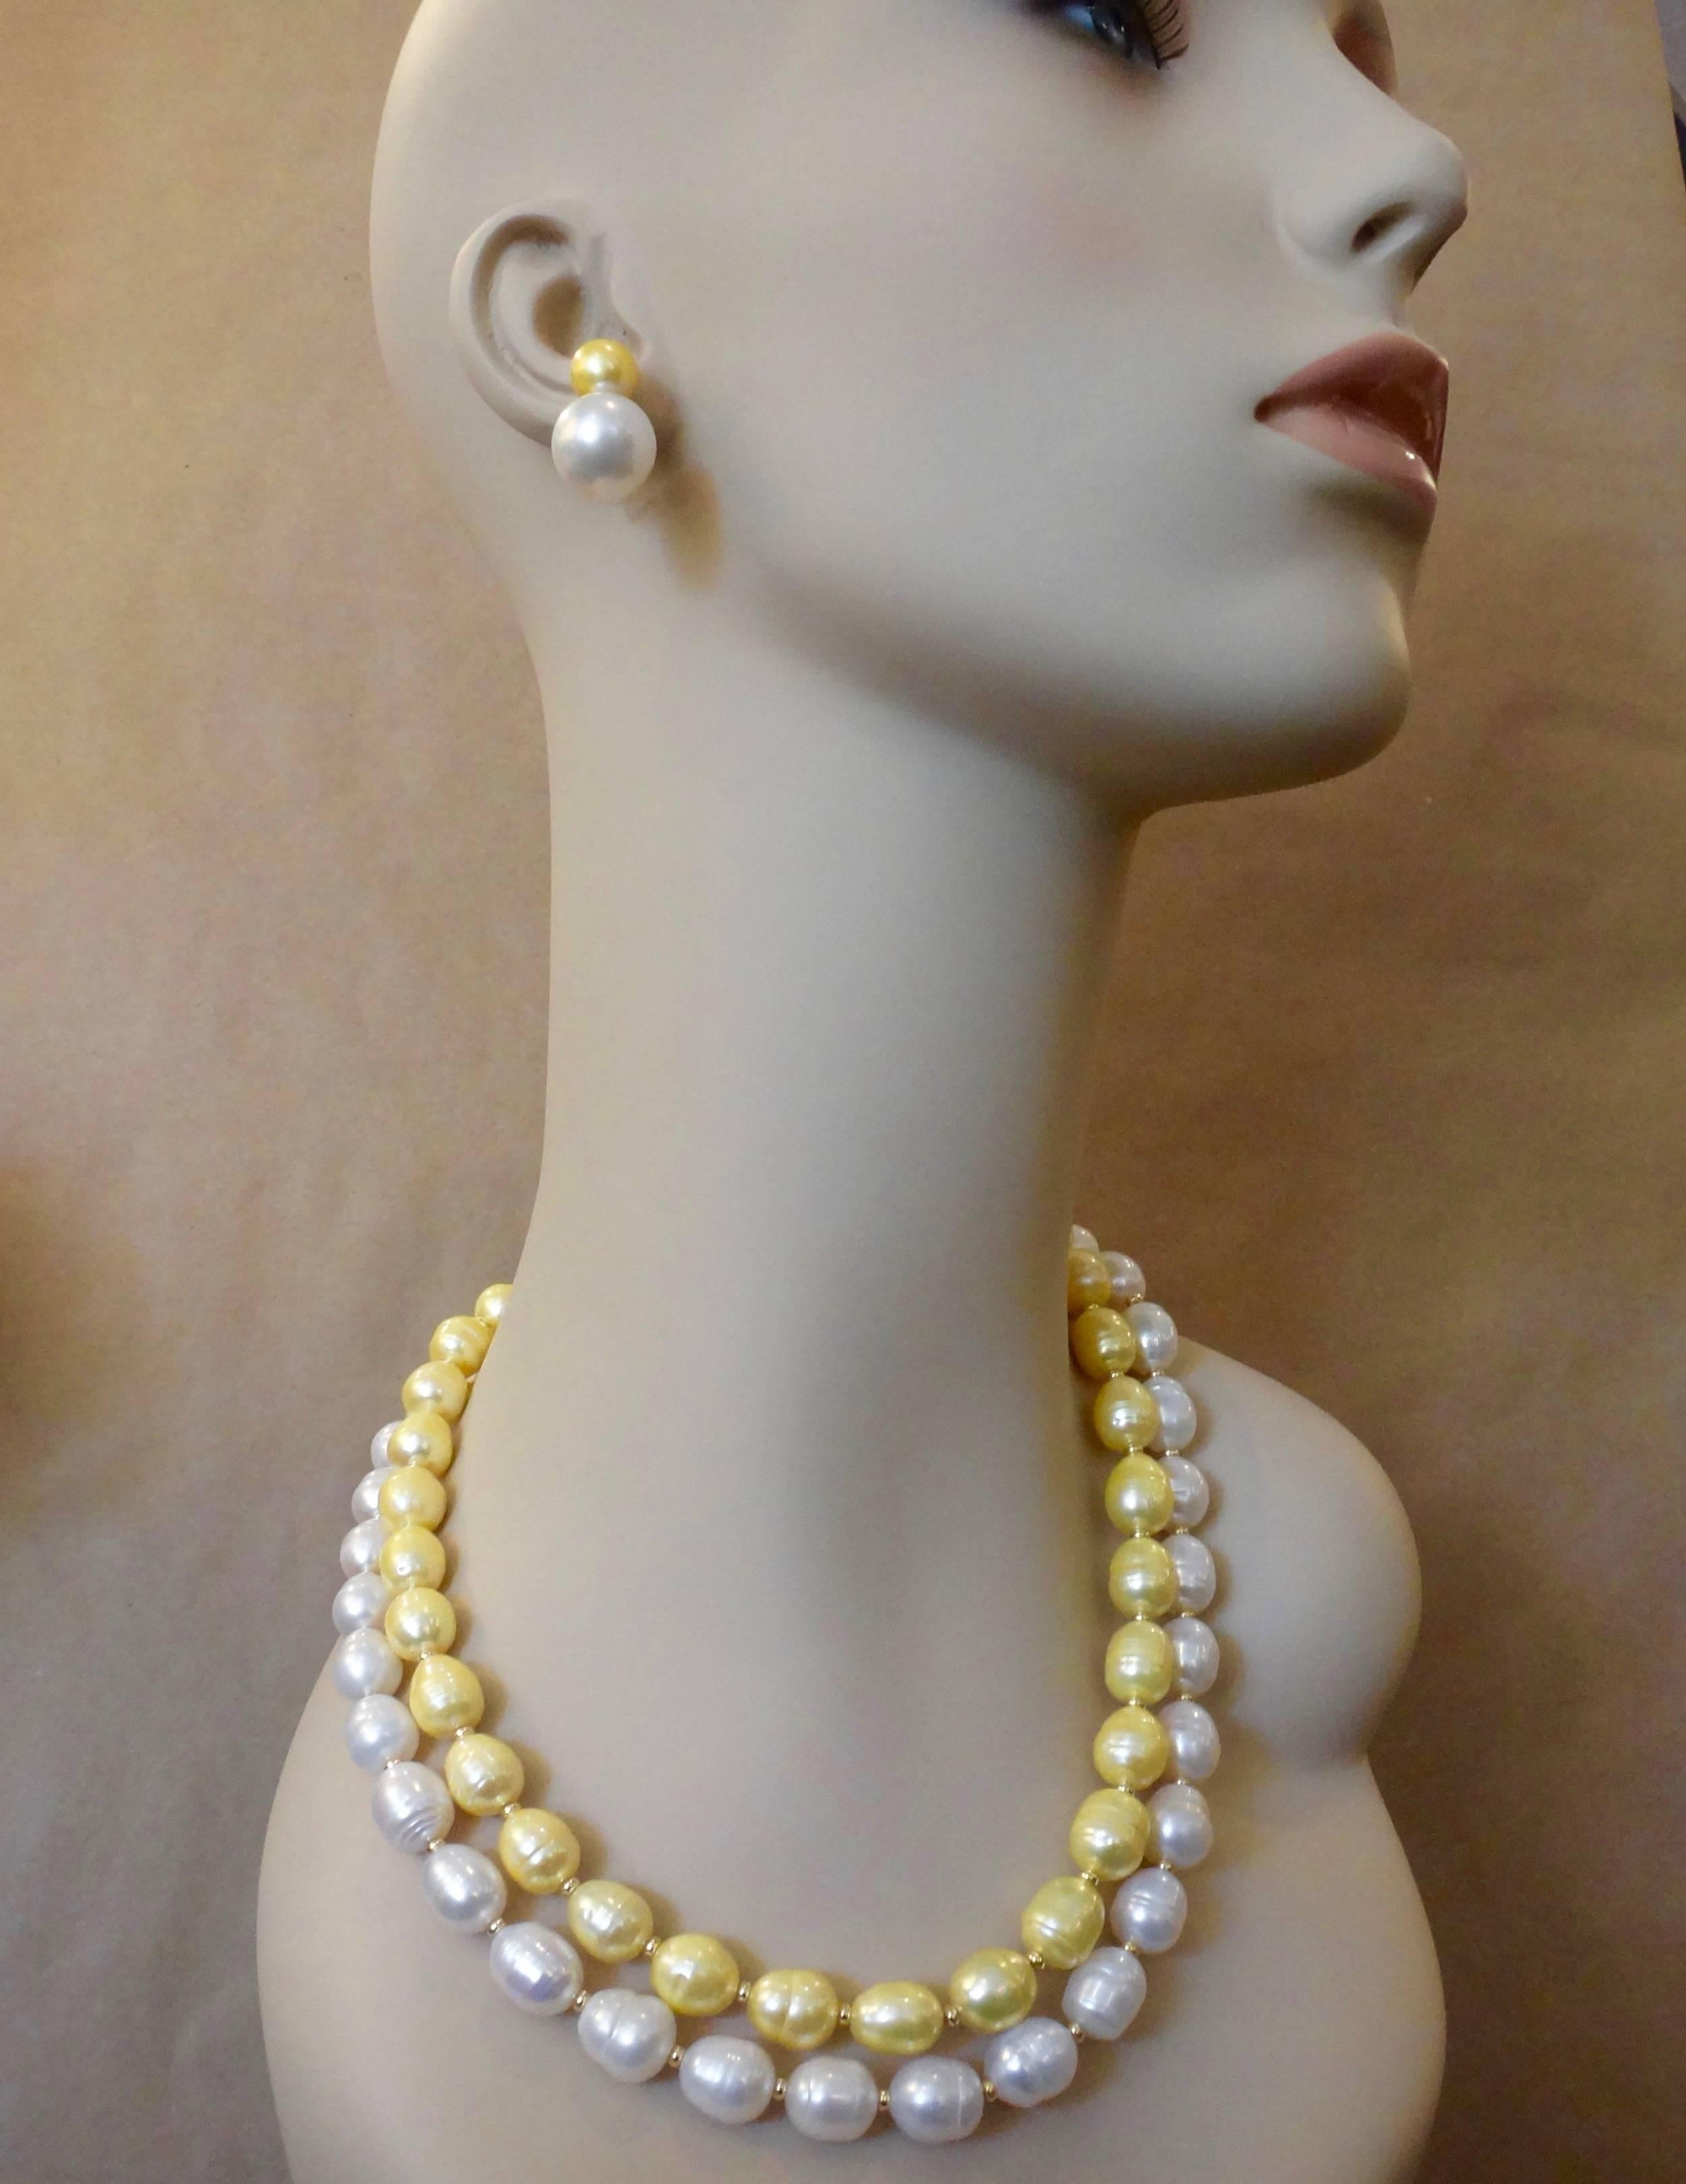 Deux rangs de perles baroques parfaitement conformées forment ce collier audacieux et impressionnant.  Le rang extérieur des perles est d'un blanc éclatant.  Le rang intérieur de perles présente de jolies nuances d'or.  Les deux ont un grand éclat. 